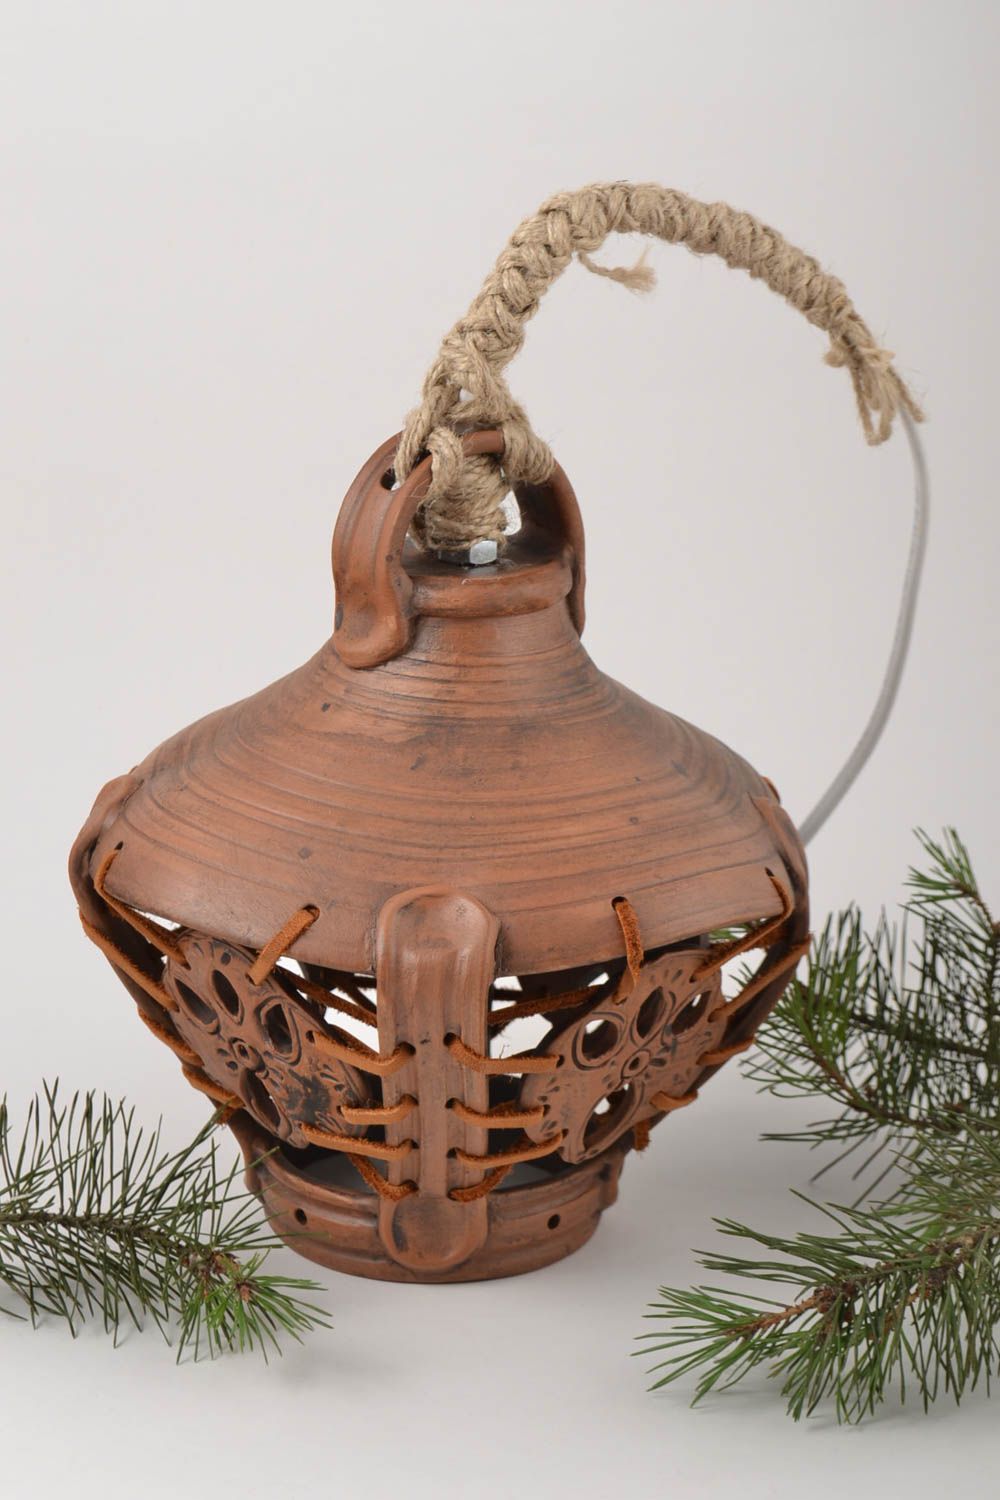 Handmade ceramic lamp decoration for home handmade decor accessory for interior photo 1